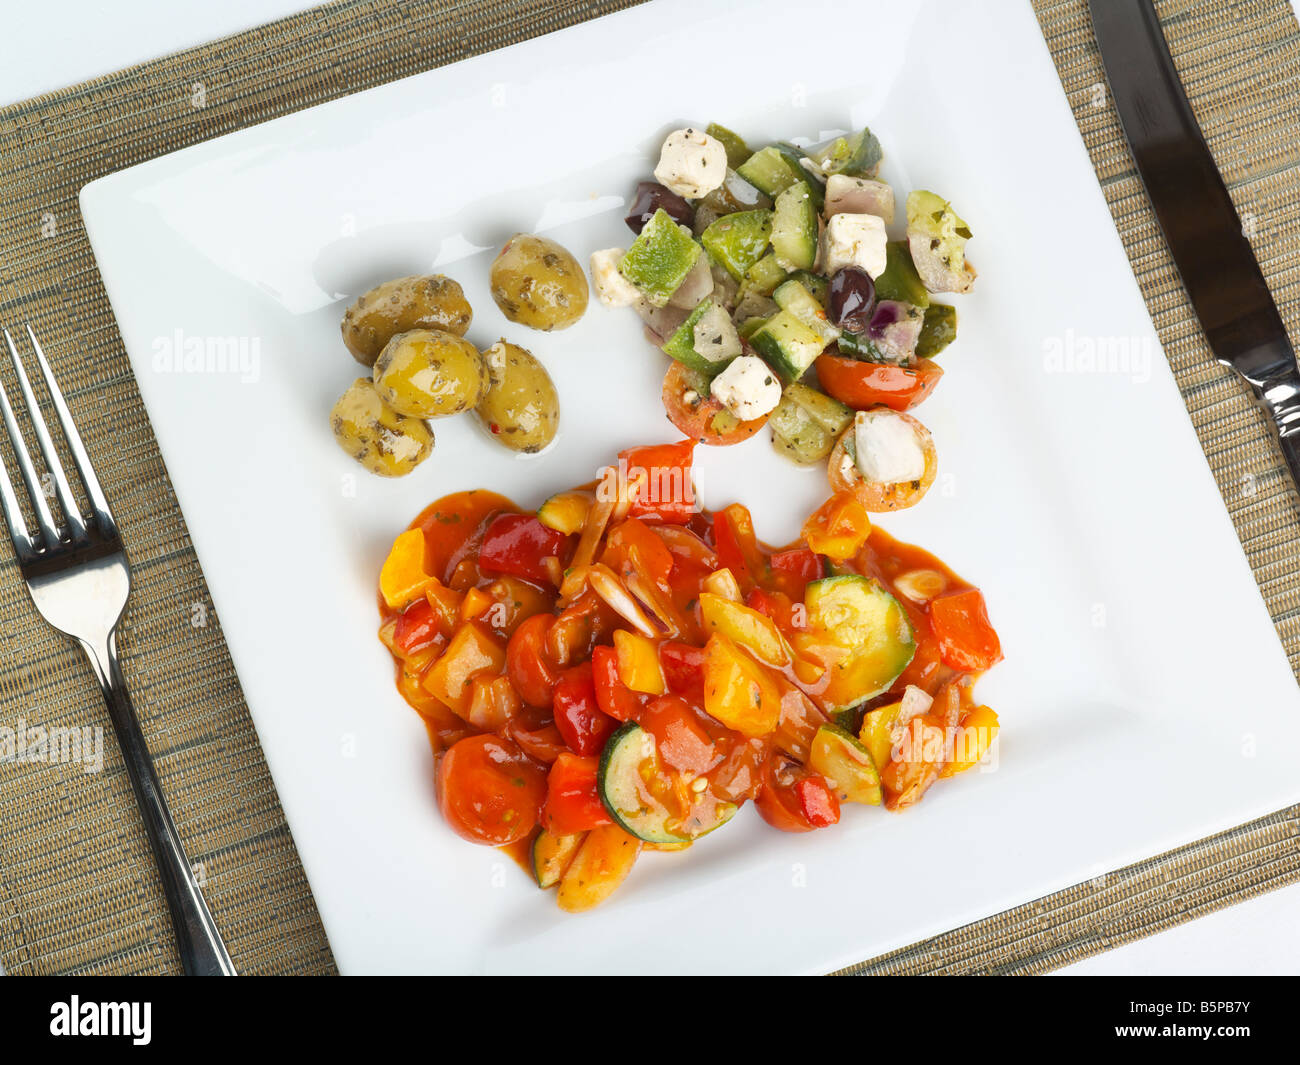 Frisch zubereitete Mahlzeit mit griechischer Salat und Feta-Käse, Oliven, Paprika Stockfoto